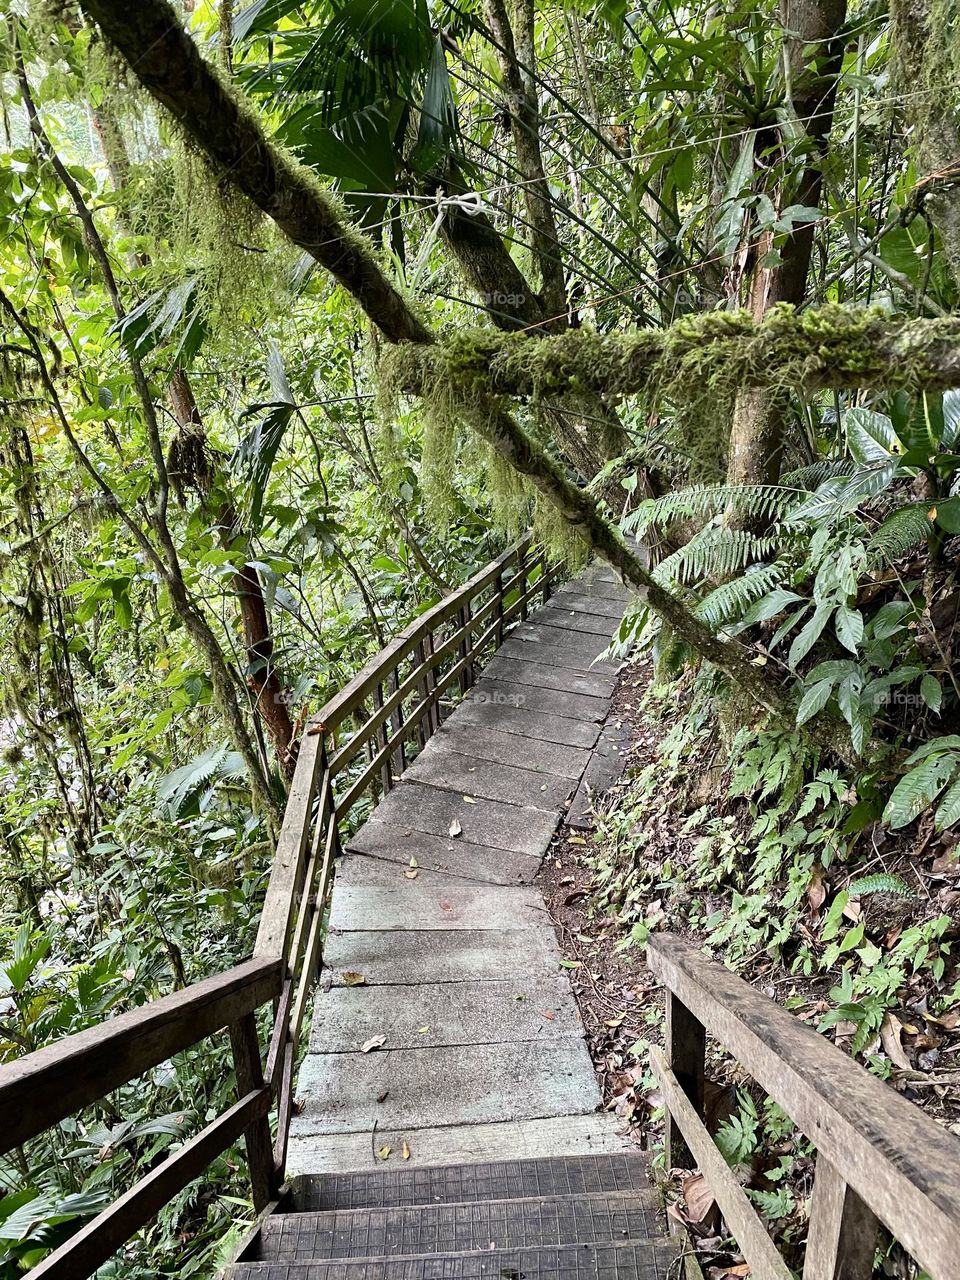 A walkway through a rainforest 